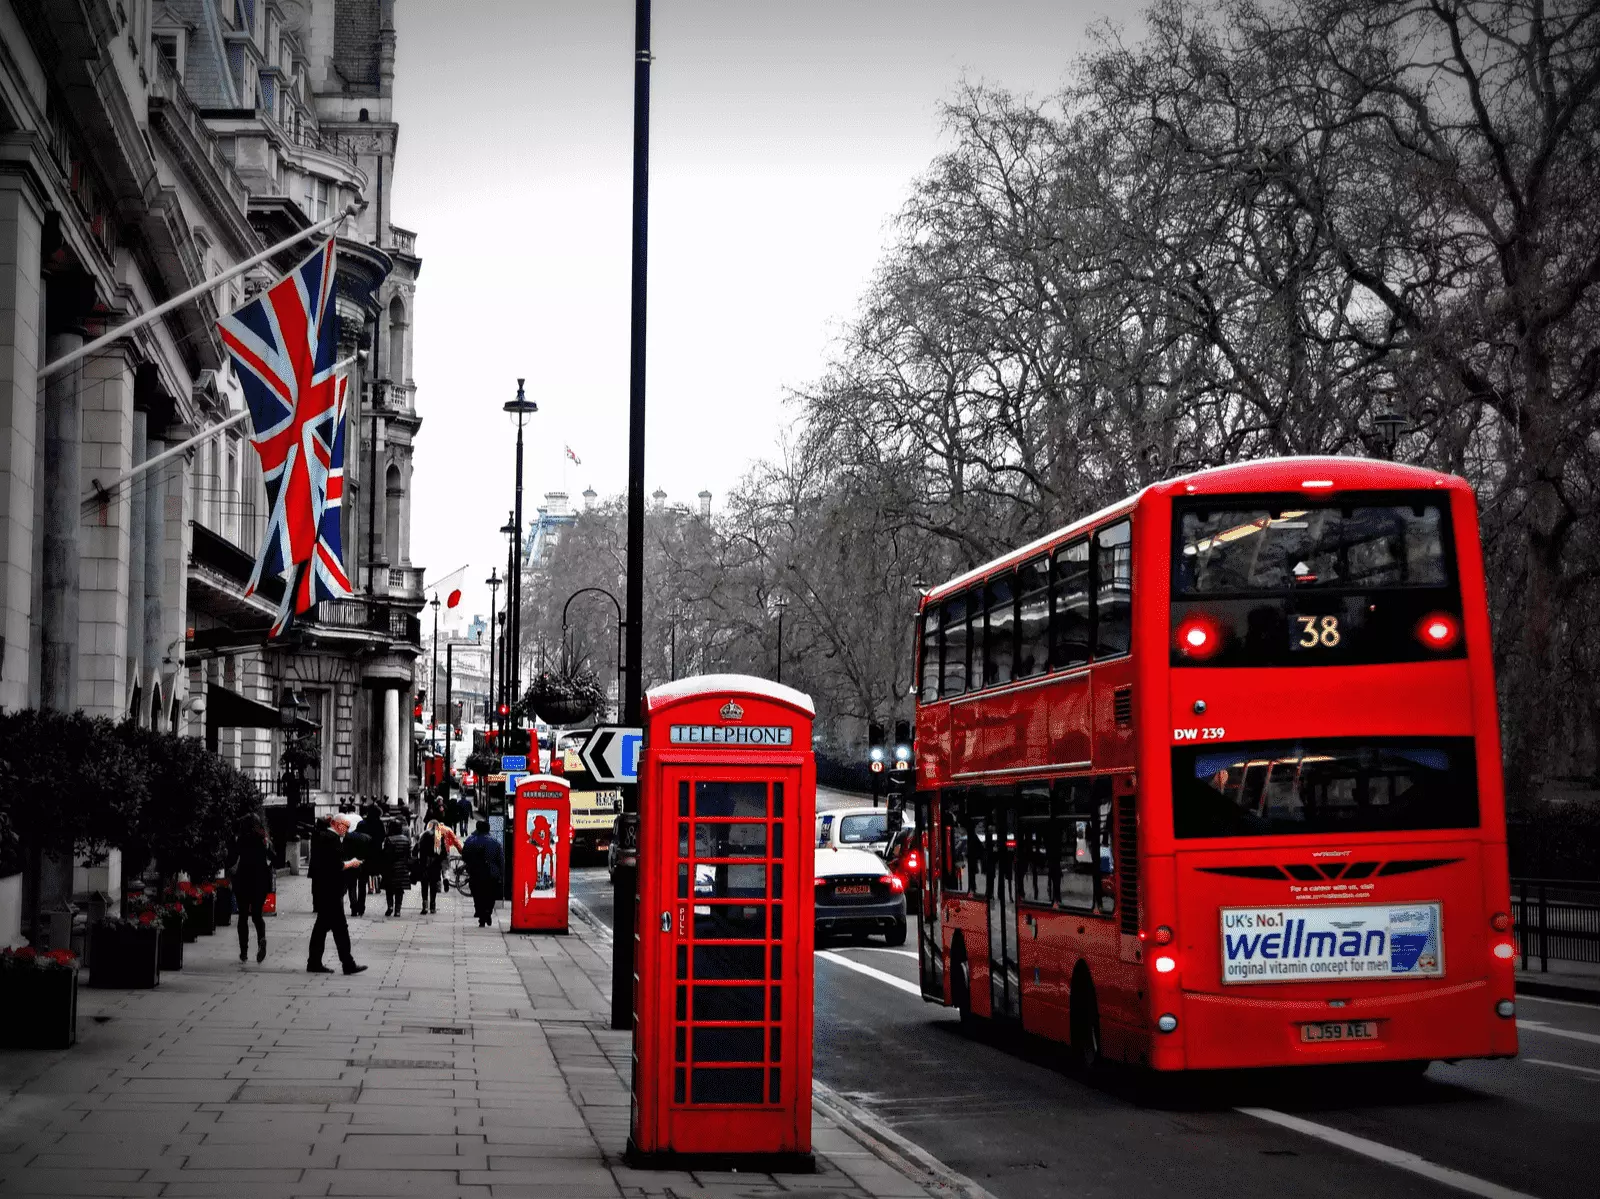 Londra'da bir cadde. kırmızı bir otobüs, telefon kulübesi ve binaya asılmış ingiltere bayrağı